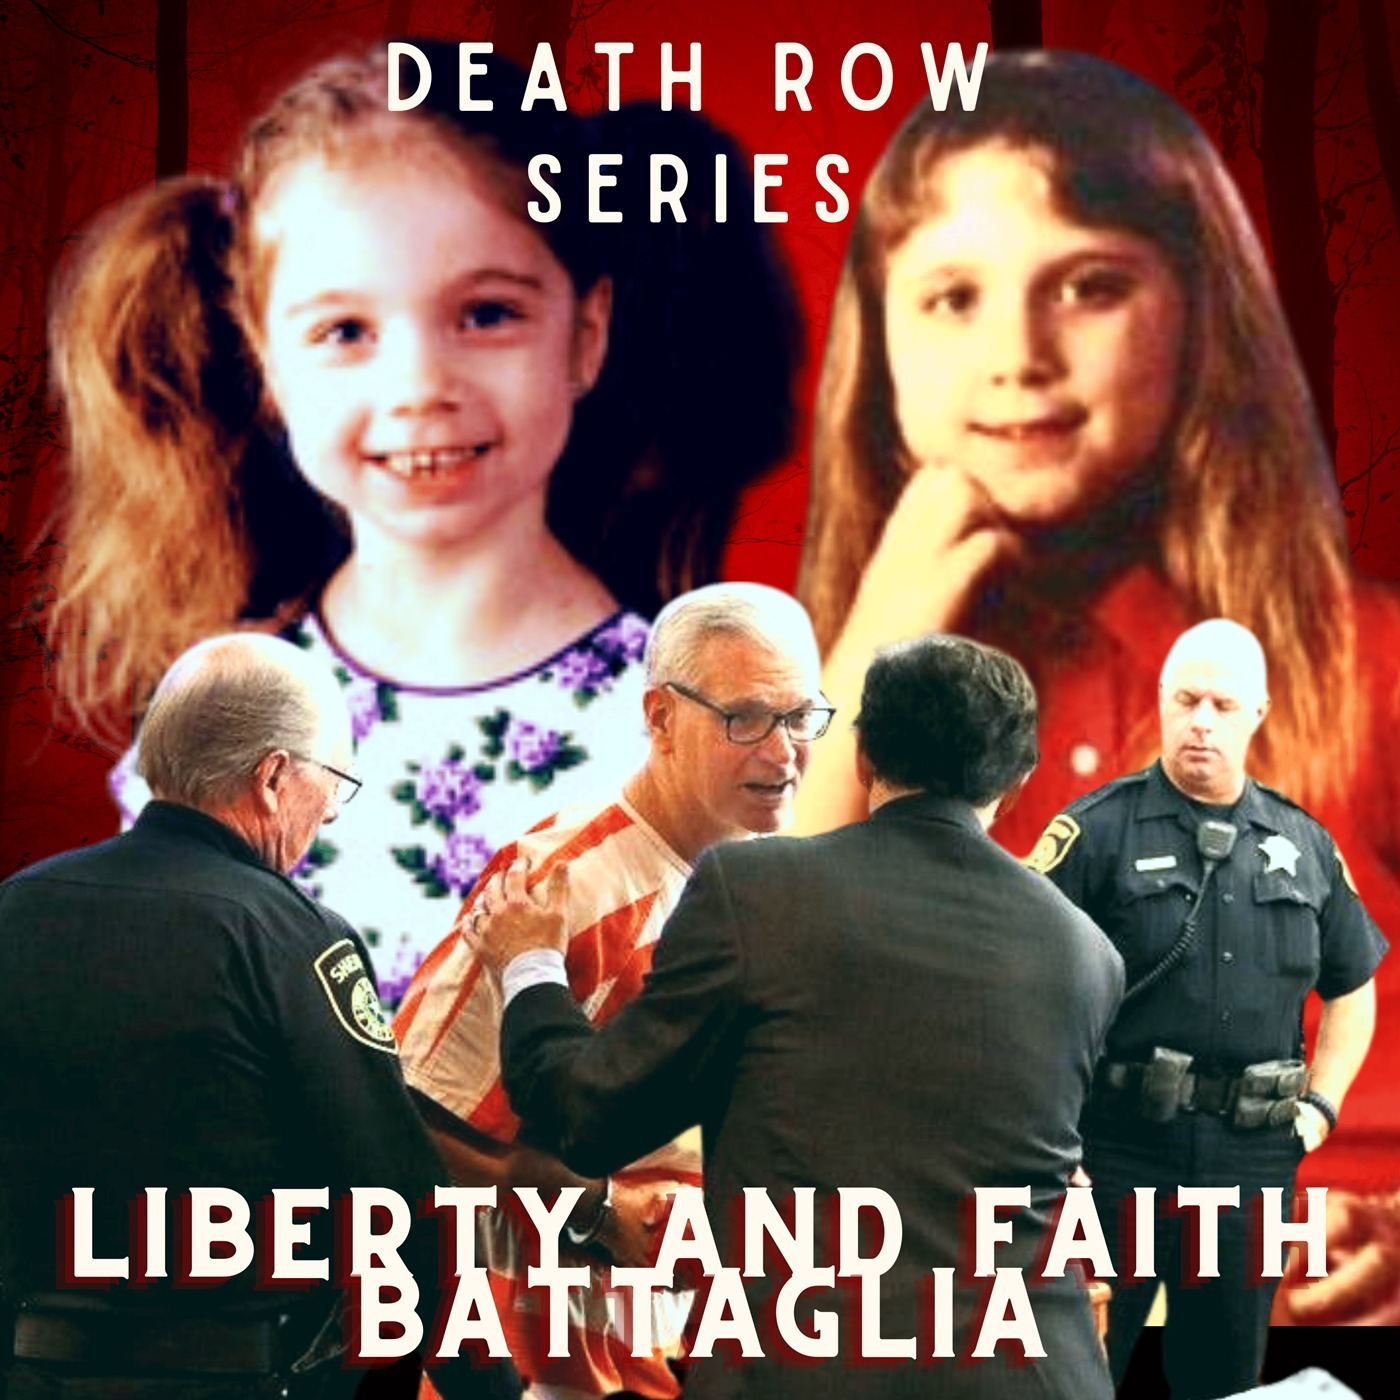 Death Row Series | The Sad Case of Faith and Liberty Battaglia Image